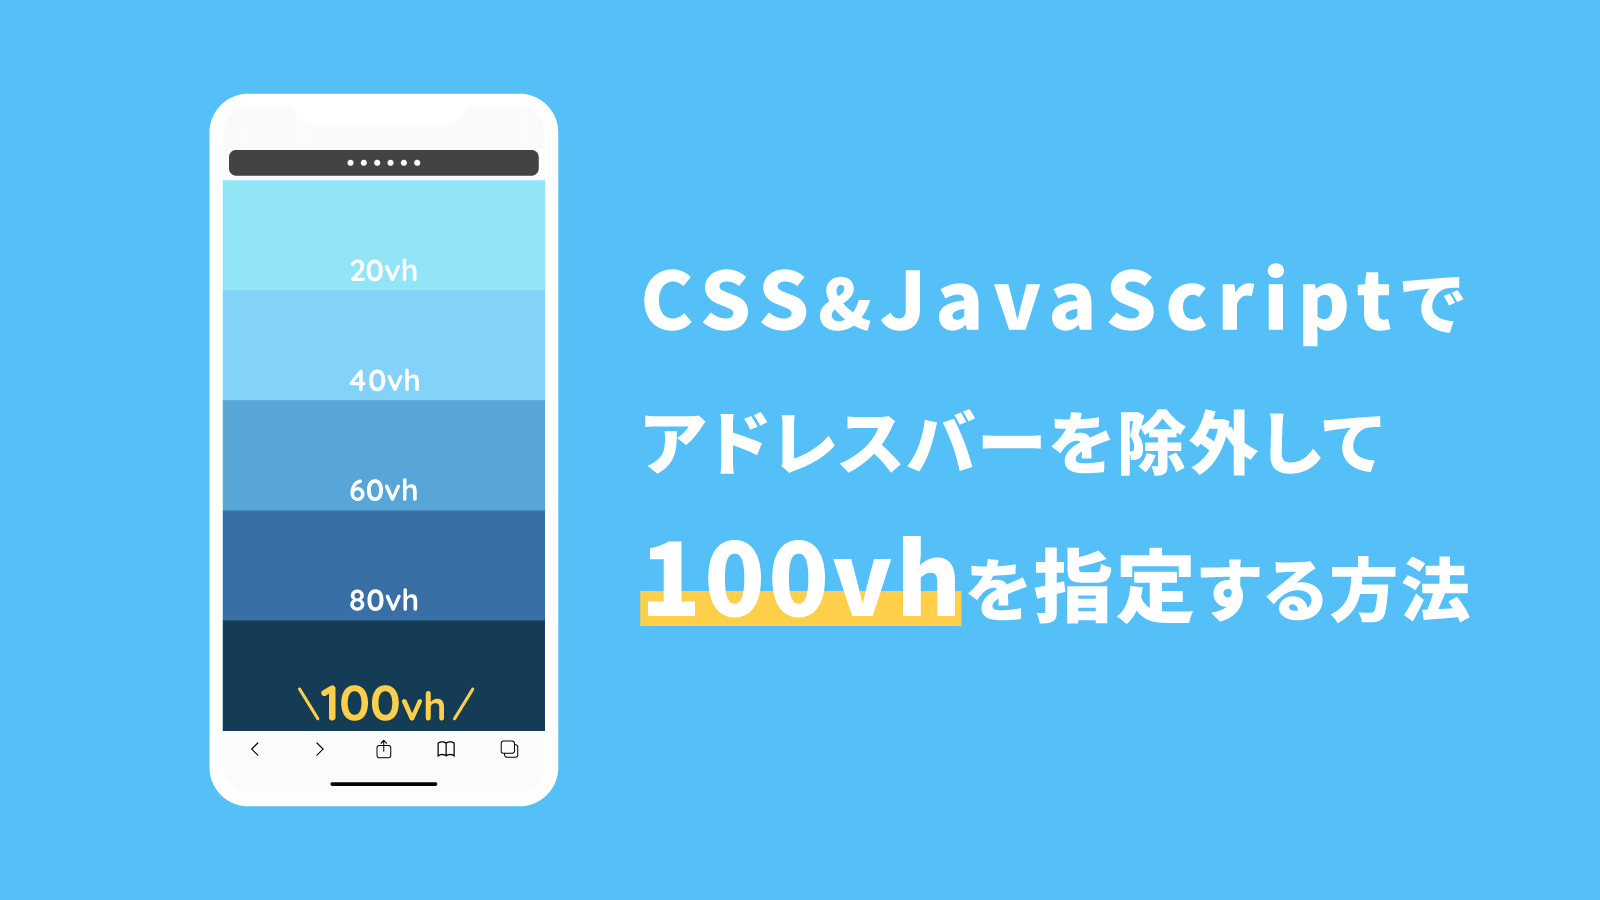 CSSとJavaScriptで新年カウントダウンタイマーを実装する方法  webdev 